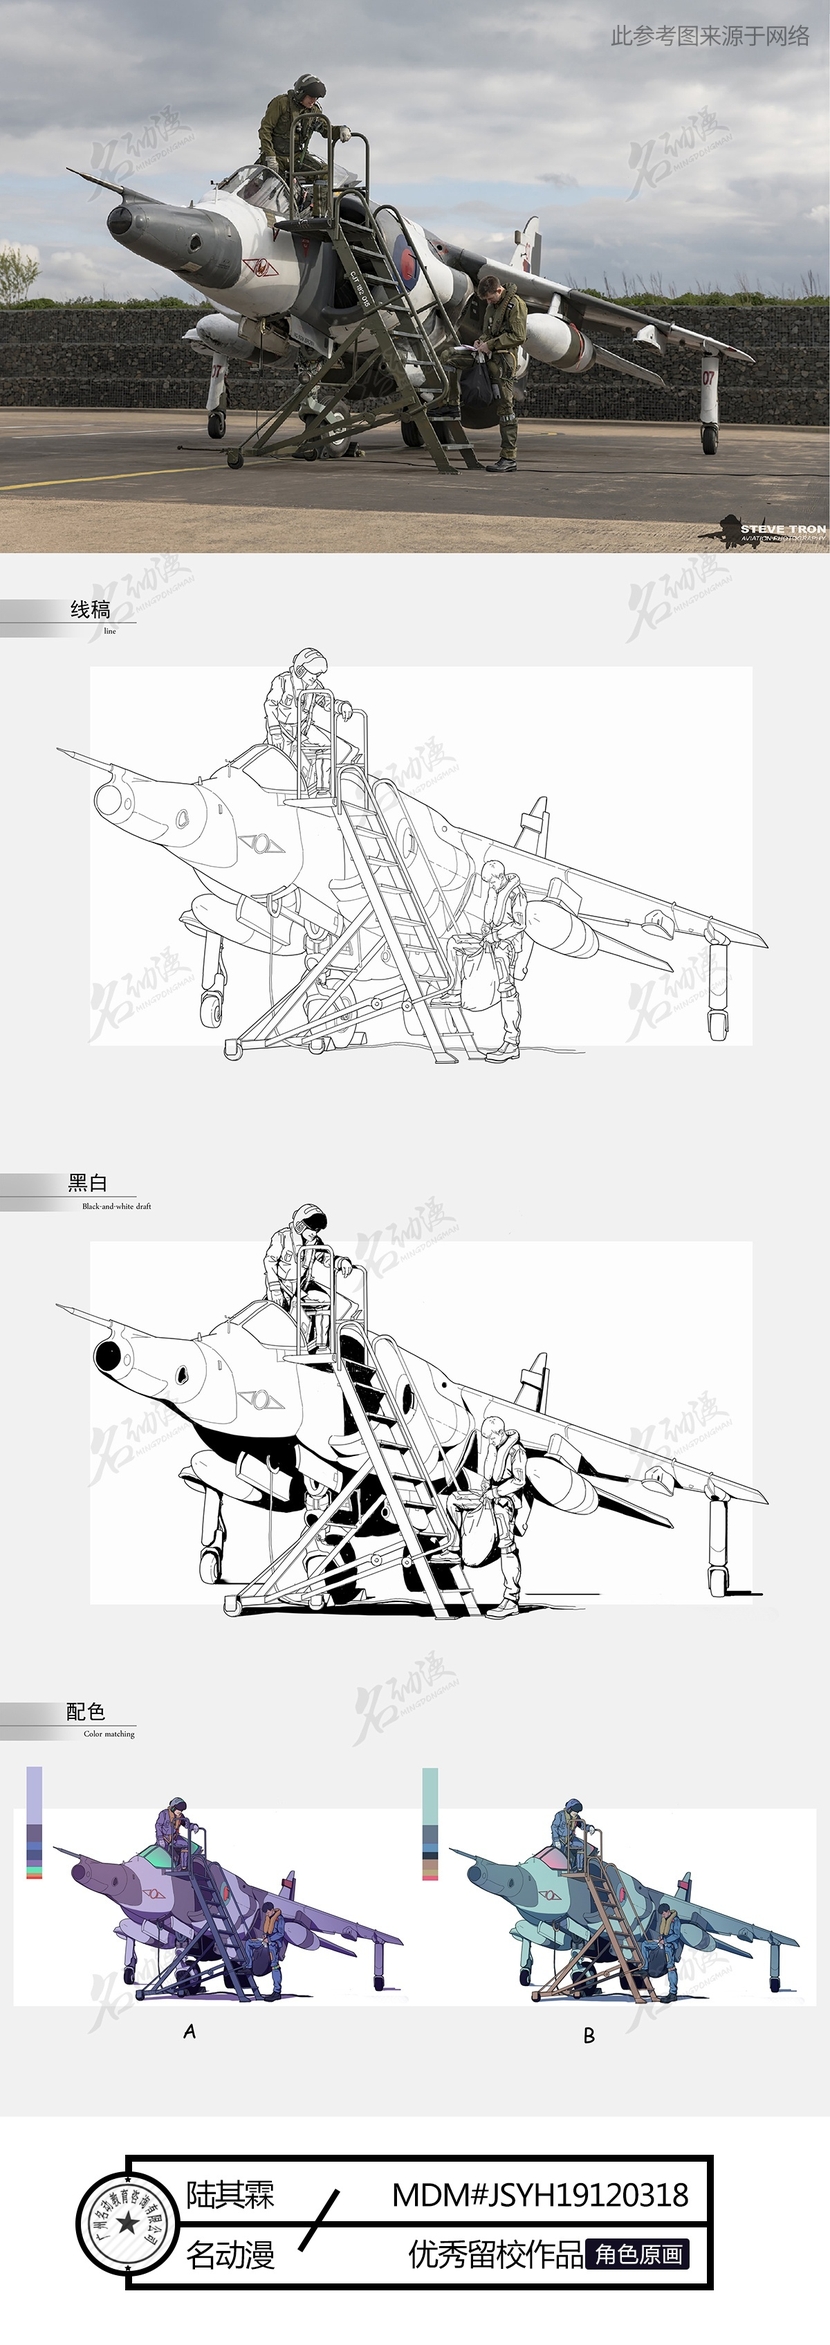 战斗飞机插画图片壁纸